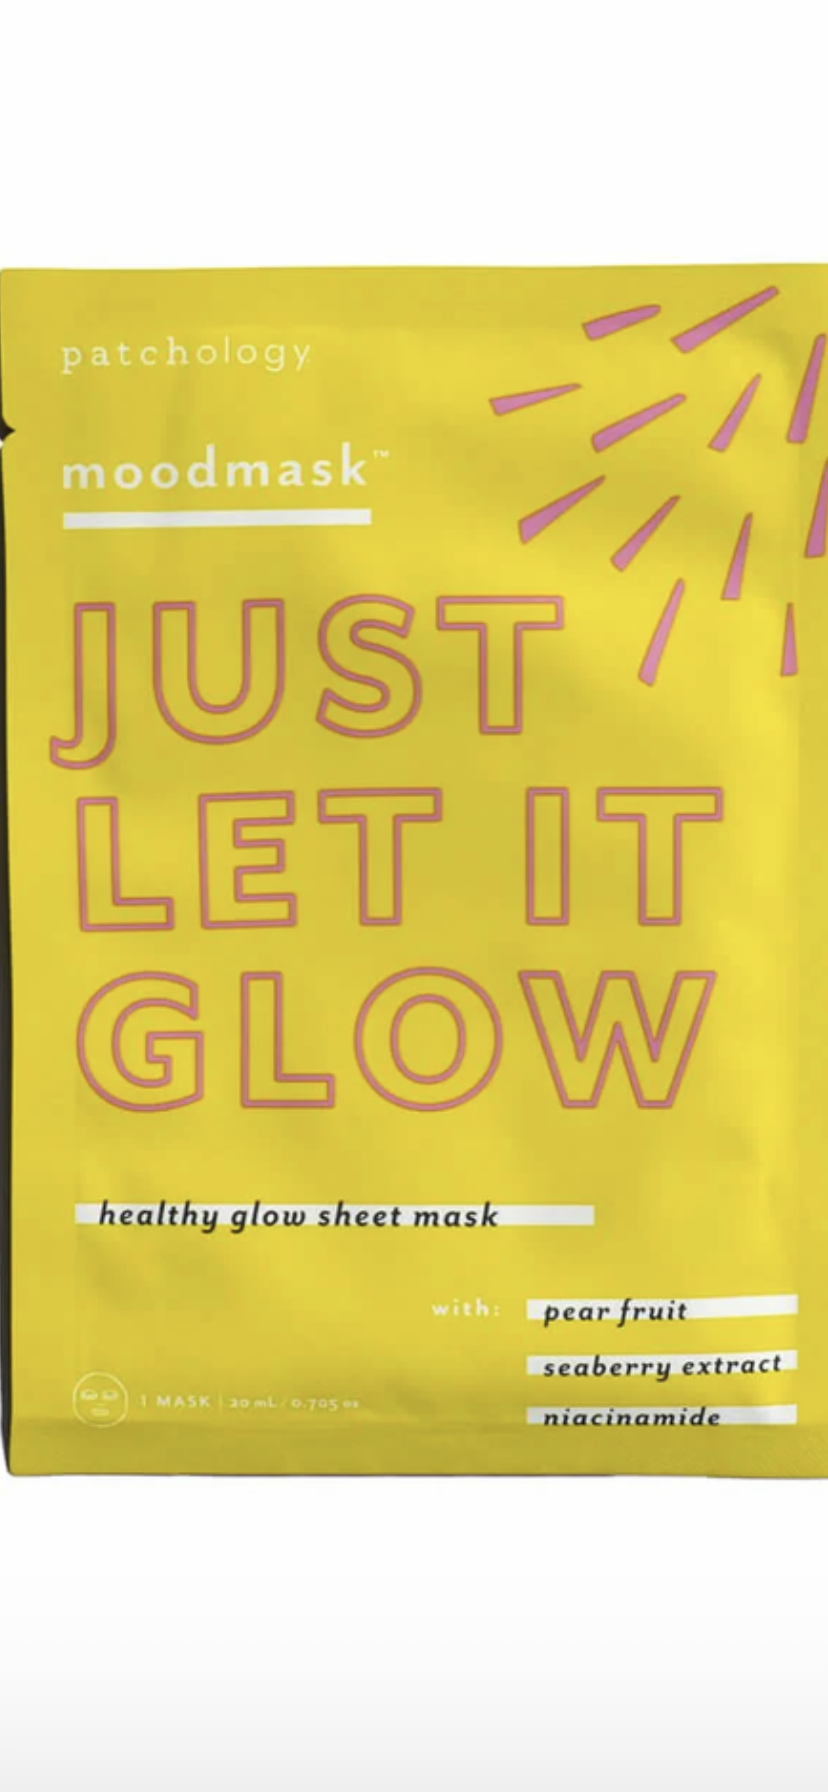 Just let it glow Moodmask